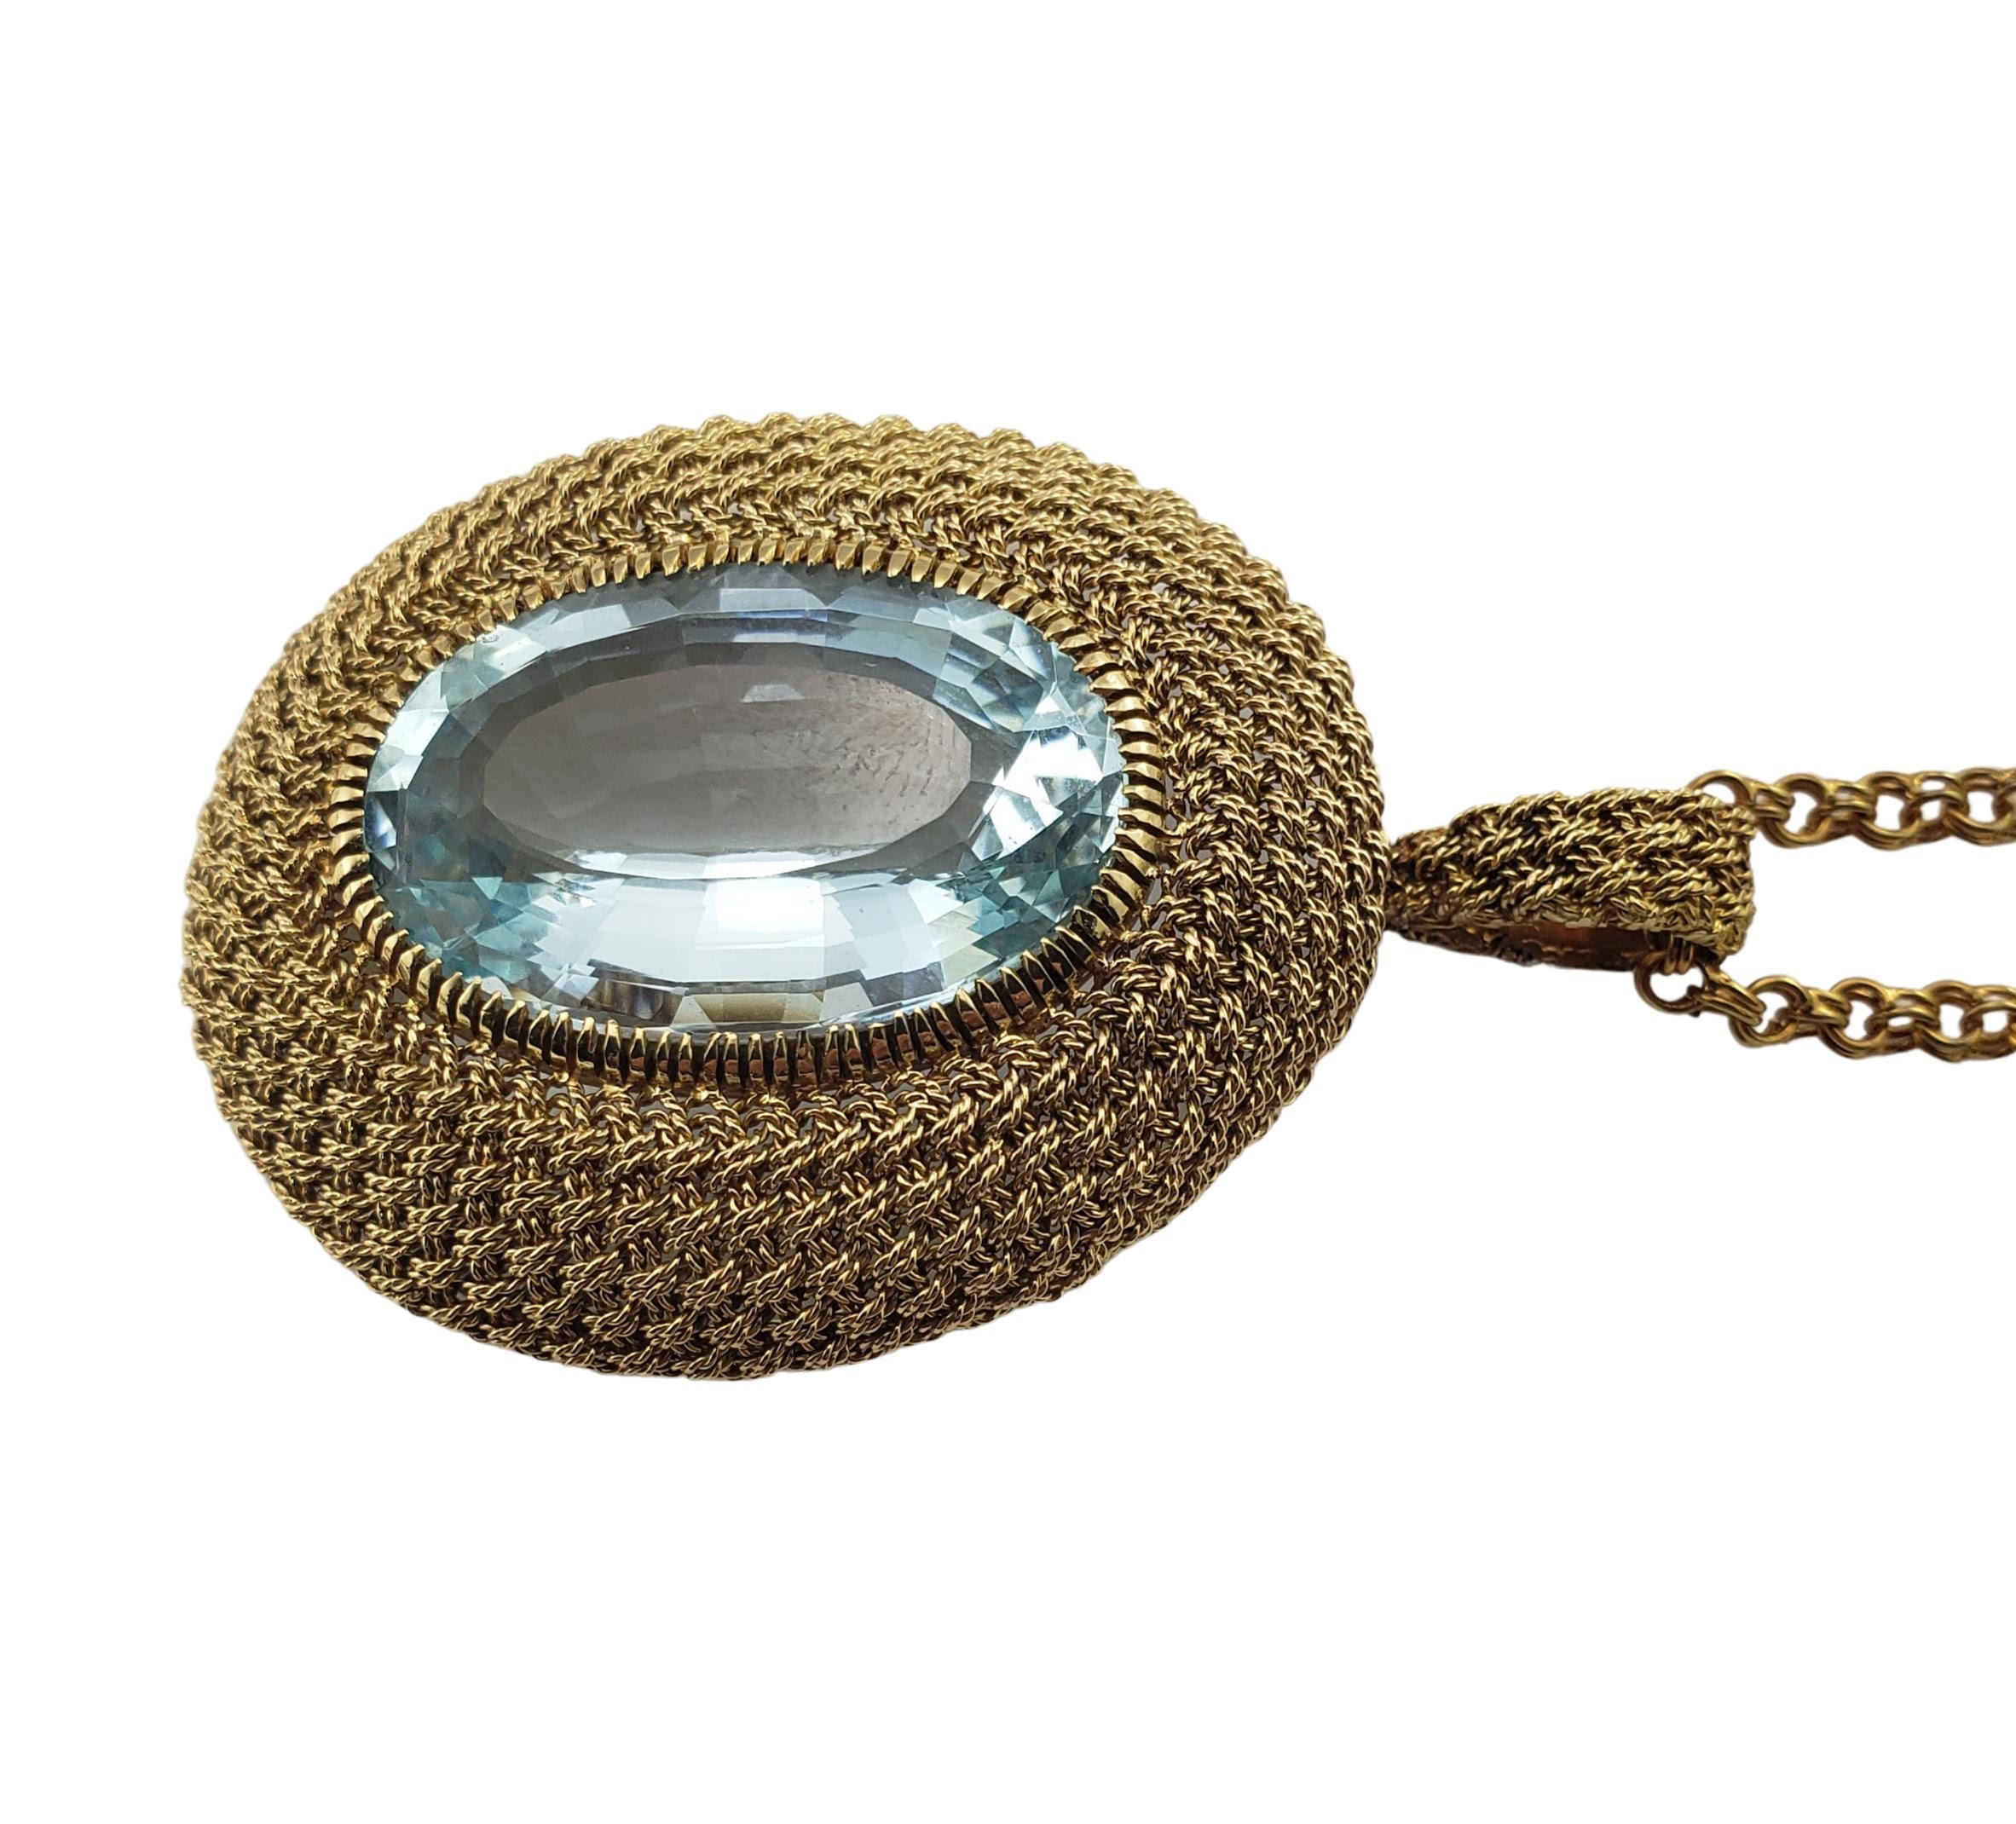 Collier pendentif aigue-marine en or jaune 18 carats certifié GAI -

Ce superbe collier pendentif comporte une aigue-marine ovale (24 mm x 16 mm) sertie dans de l'or jaune 18 carats magnifiquement détaillé.

Poids de l'aigue-marine :  27,81